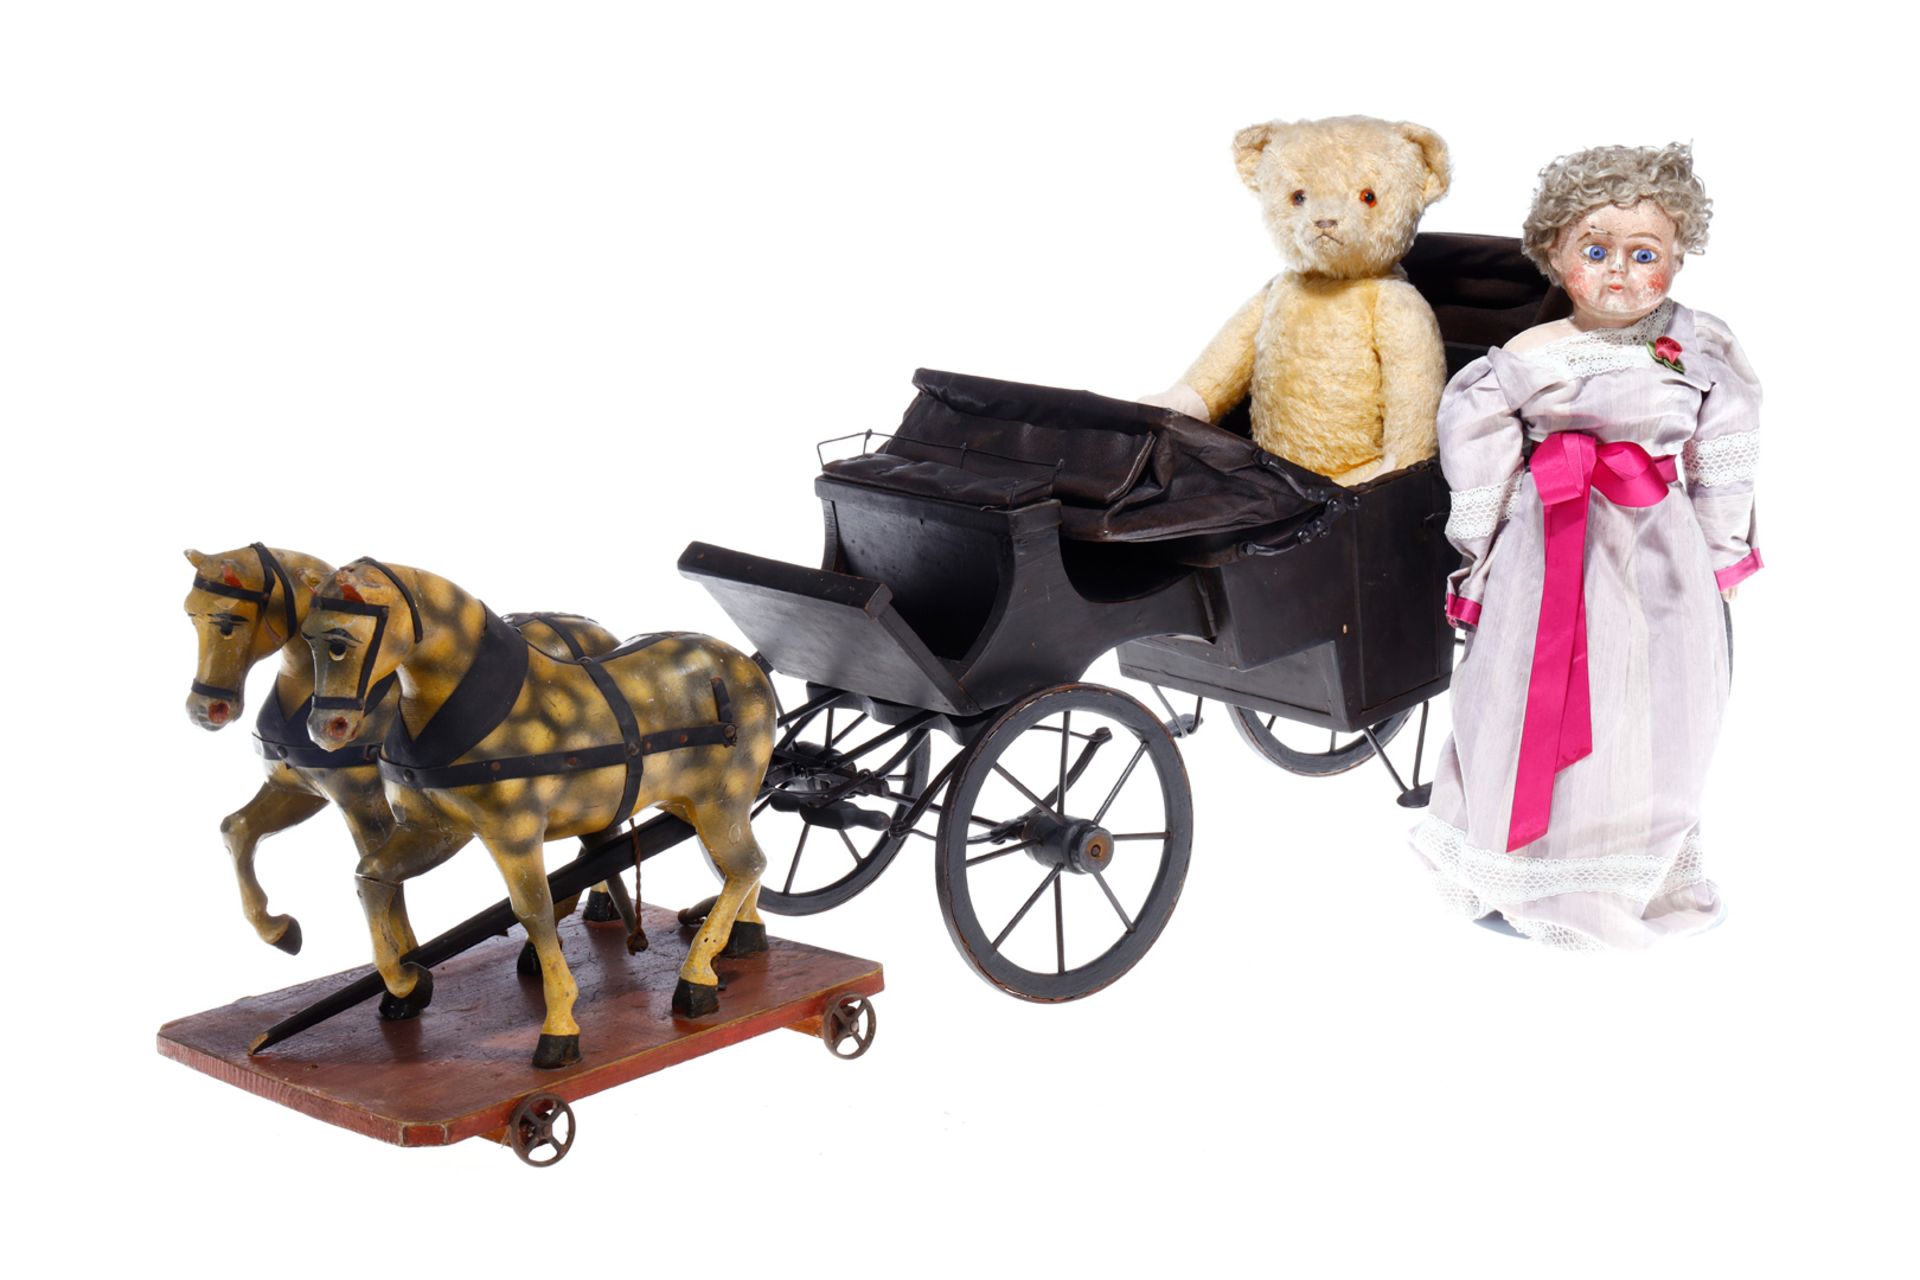 Holzkutsche, um 1900, mit Verdeck, dazu frühe Papiermaché-Puppe (restauriert und bespielt), Teddy-